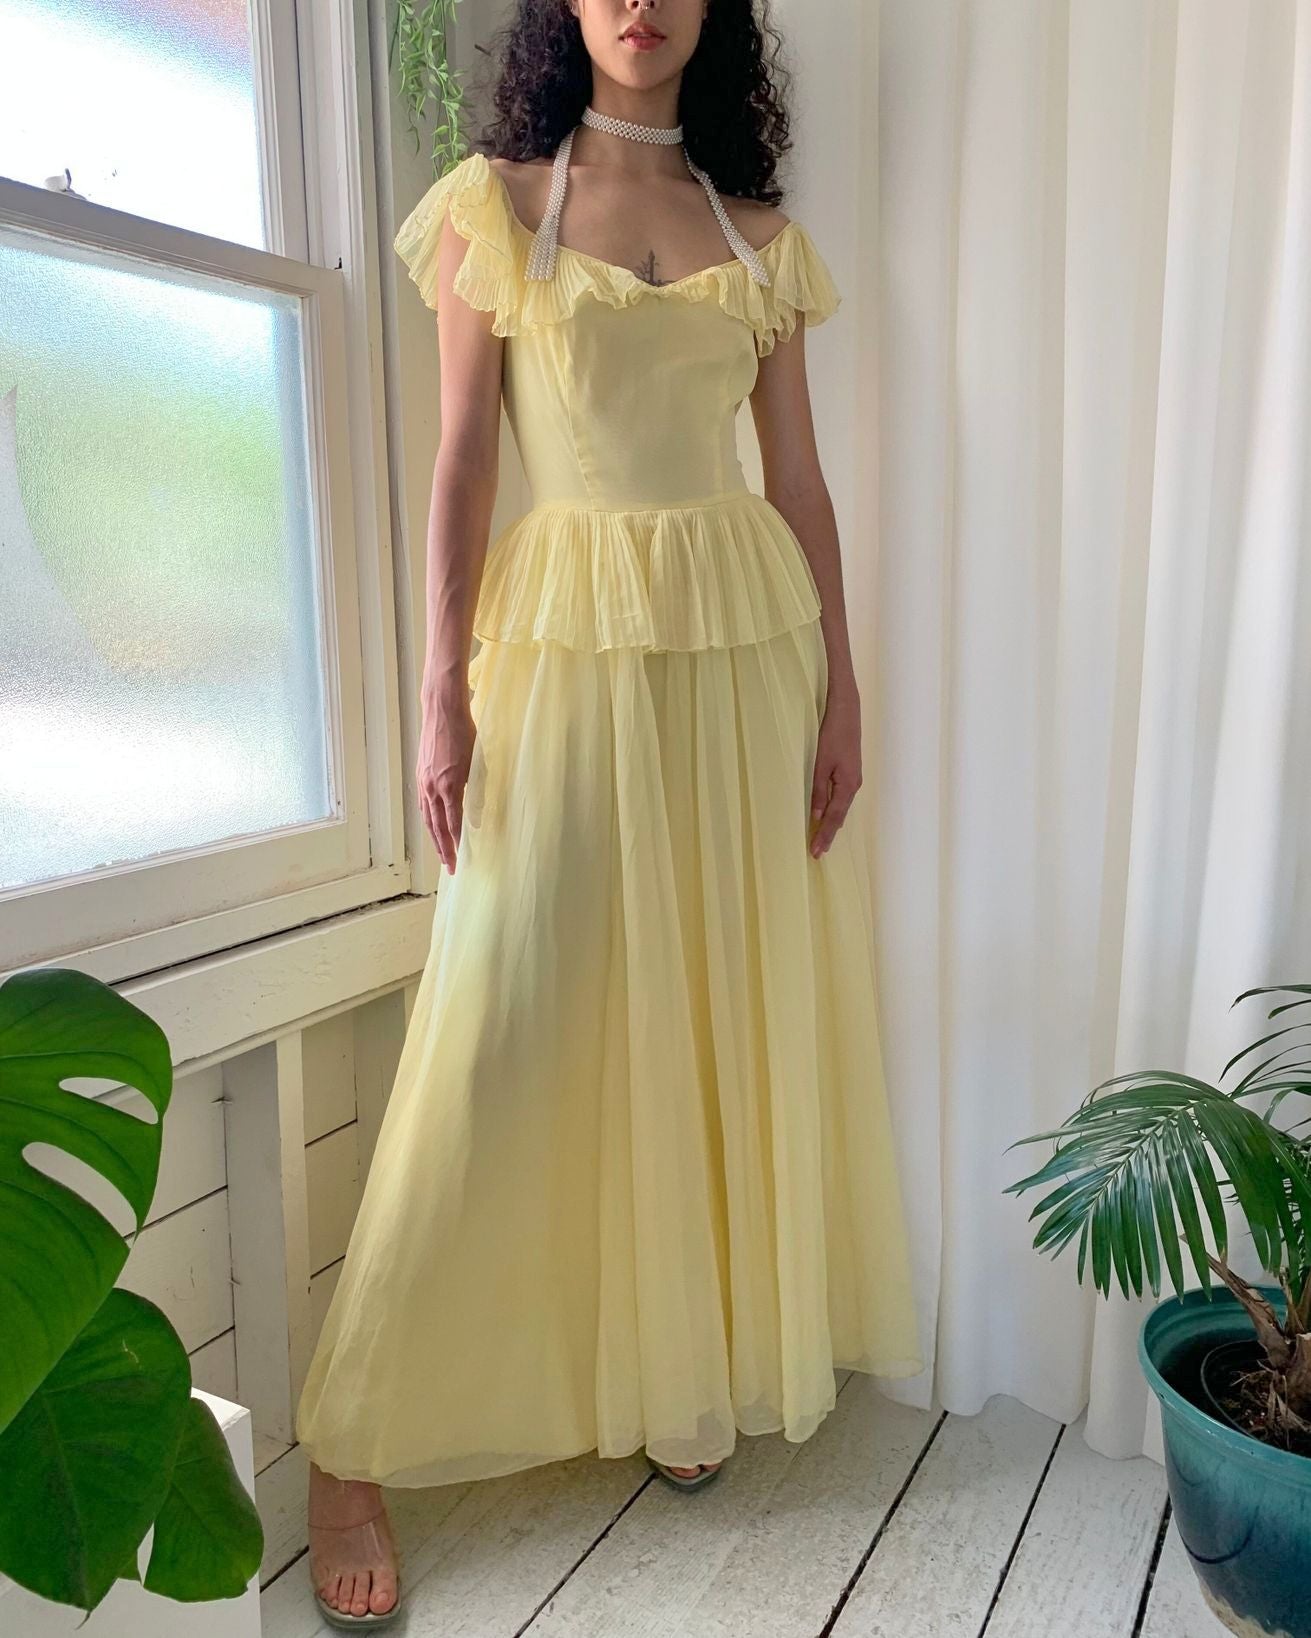 The Peplum Evening Dress for an Effortless Royal Look